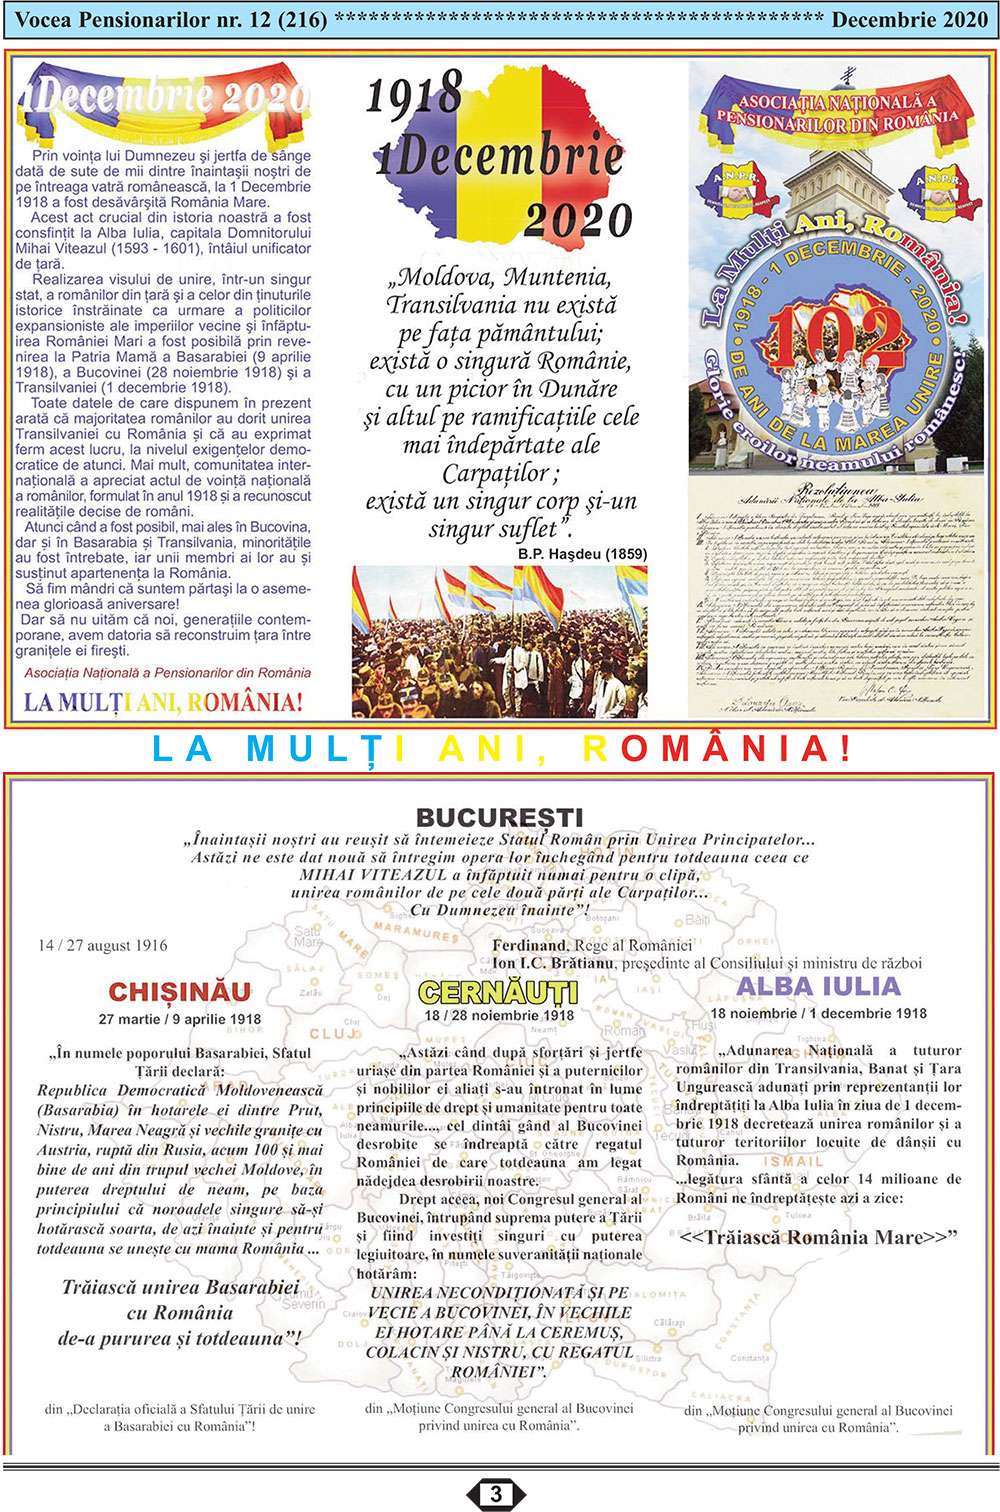 Ziarul Vocea Pensionarilor al Asociatiei Nationale a Pensionarilor din Romania decembrie 2020